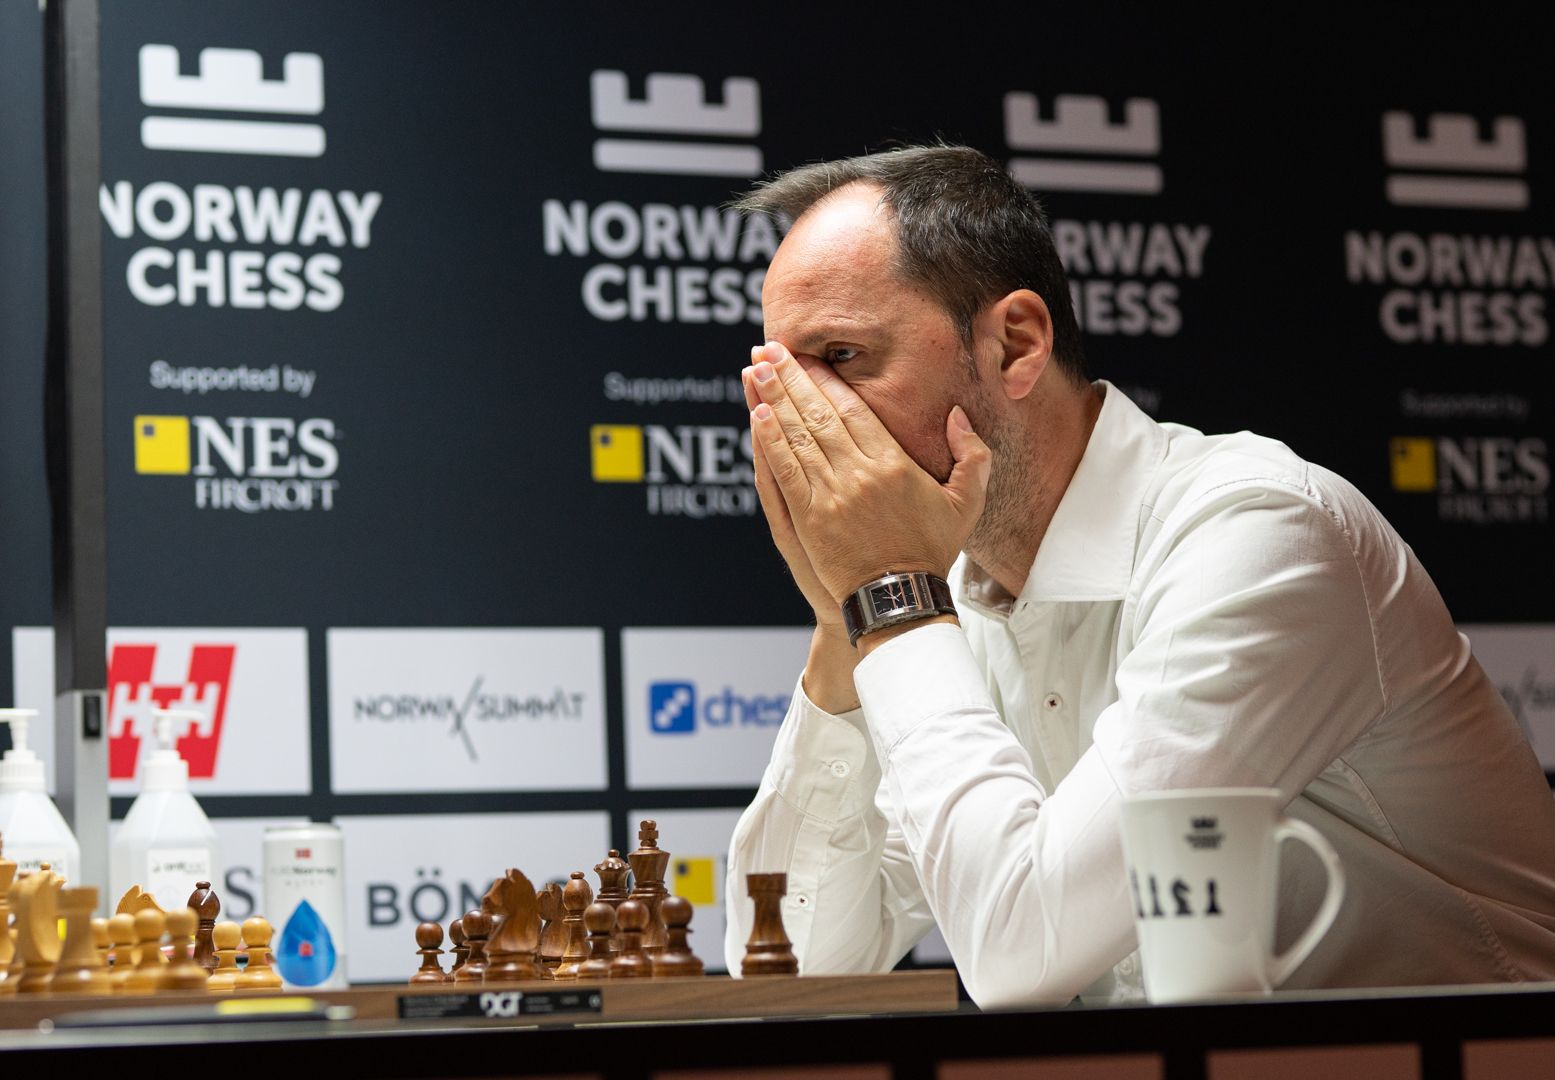 Ultima jornada en el Norway Chess: Carlsen y Mamedyarov luchan el